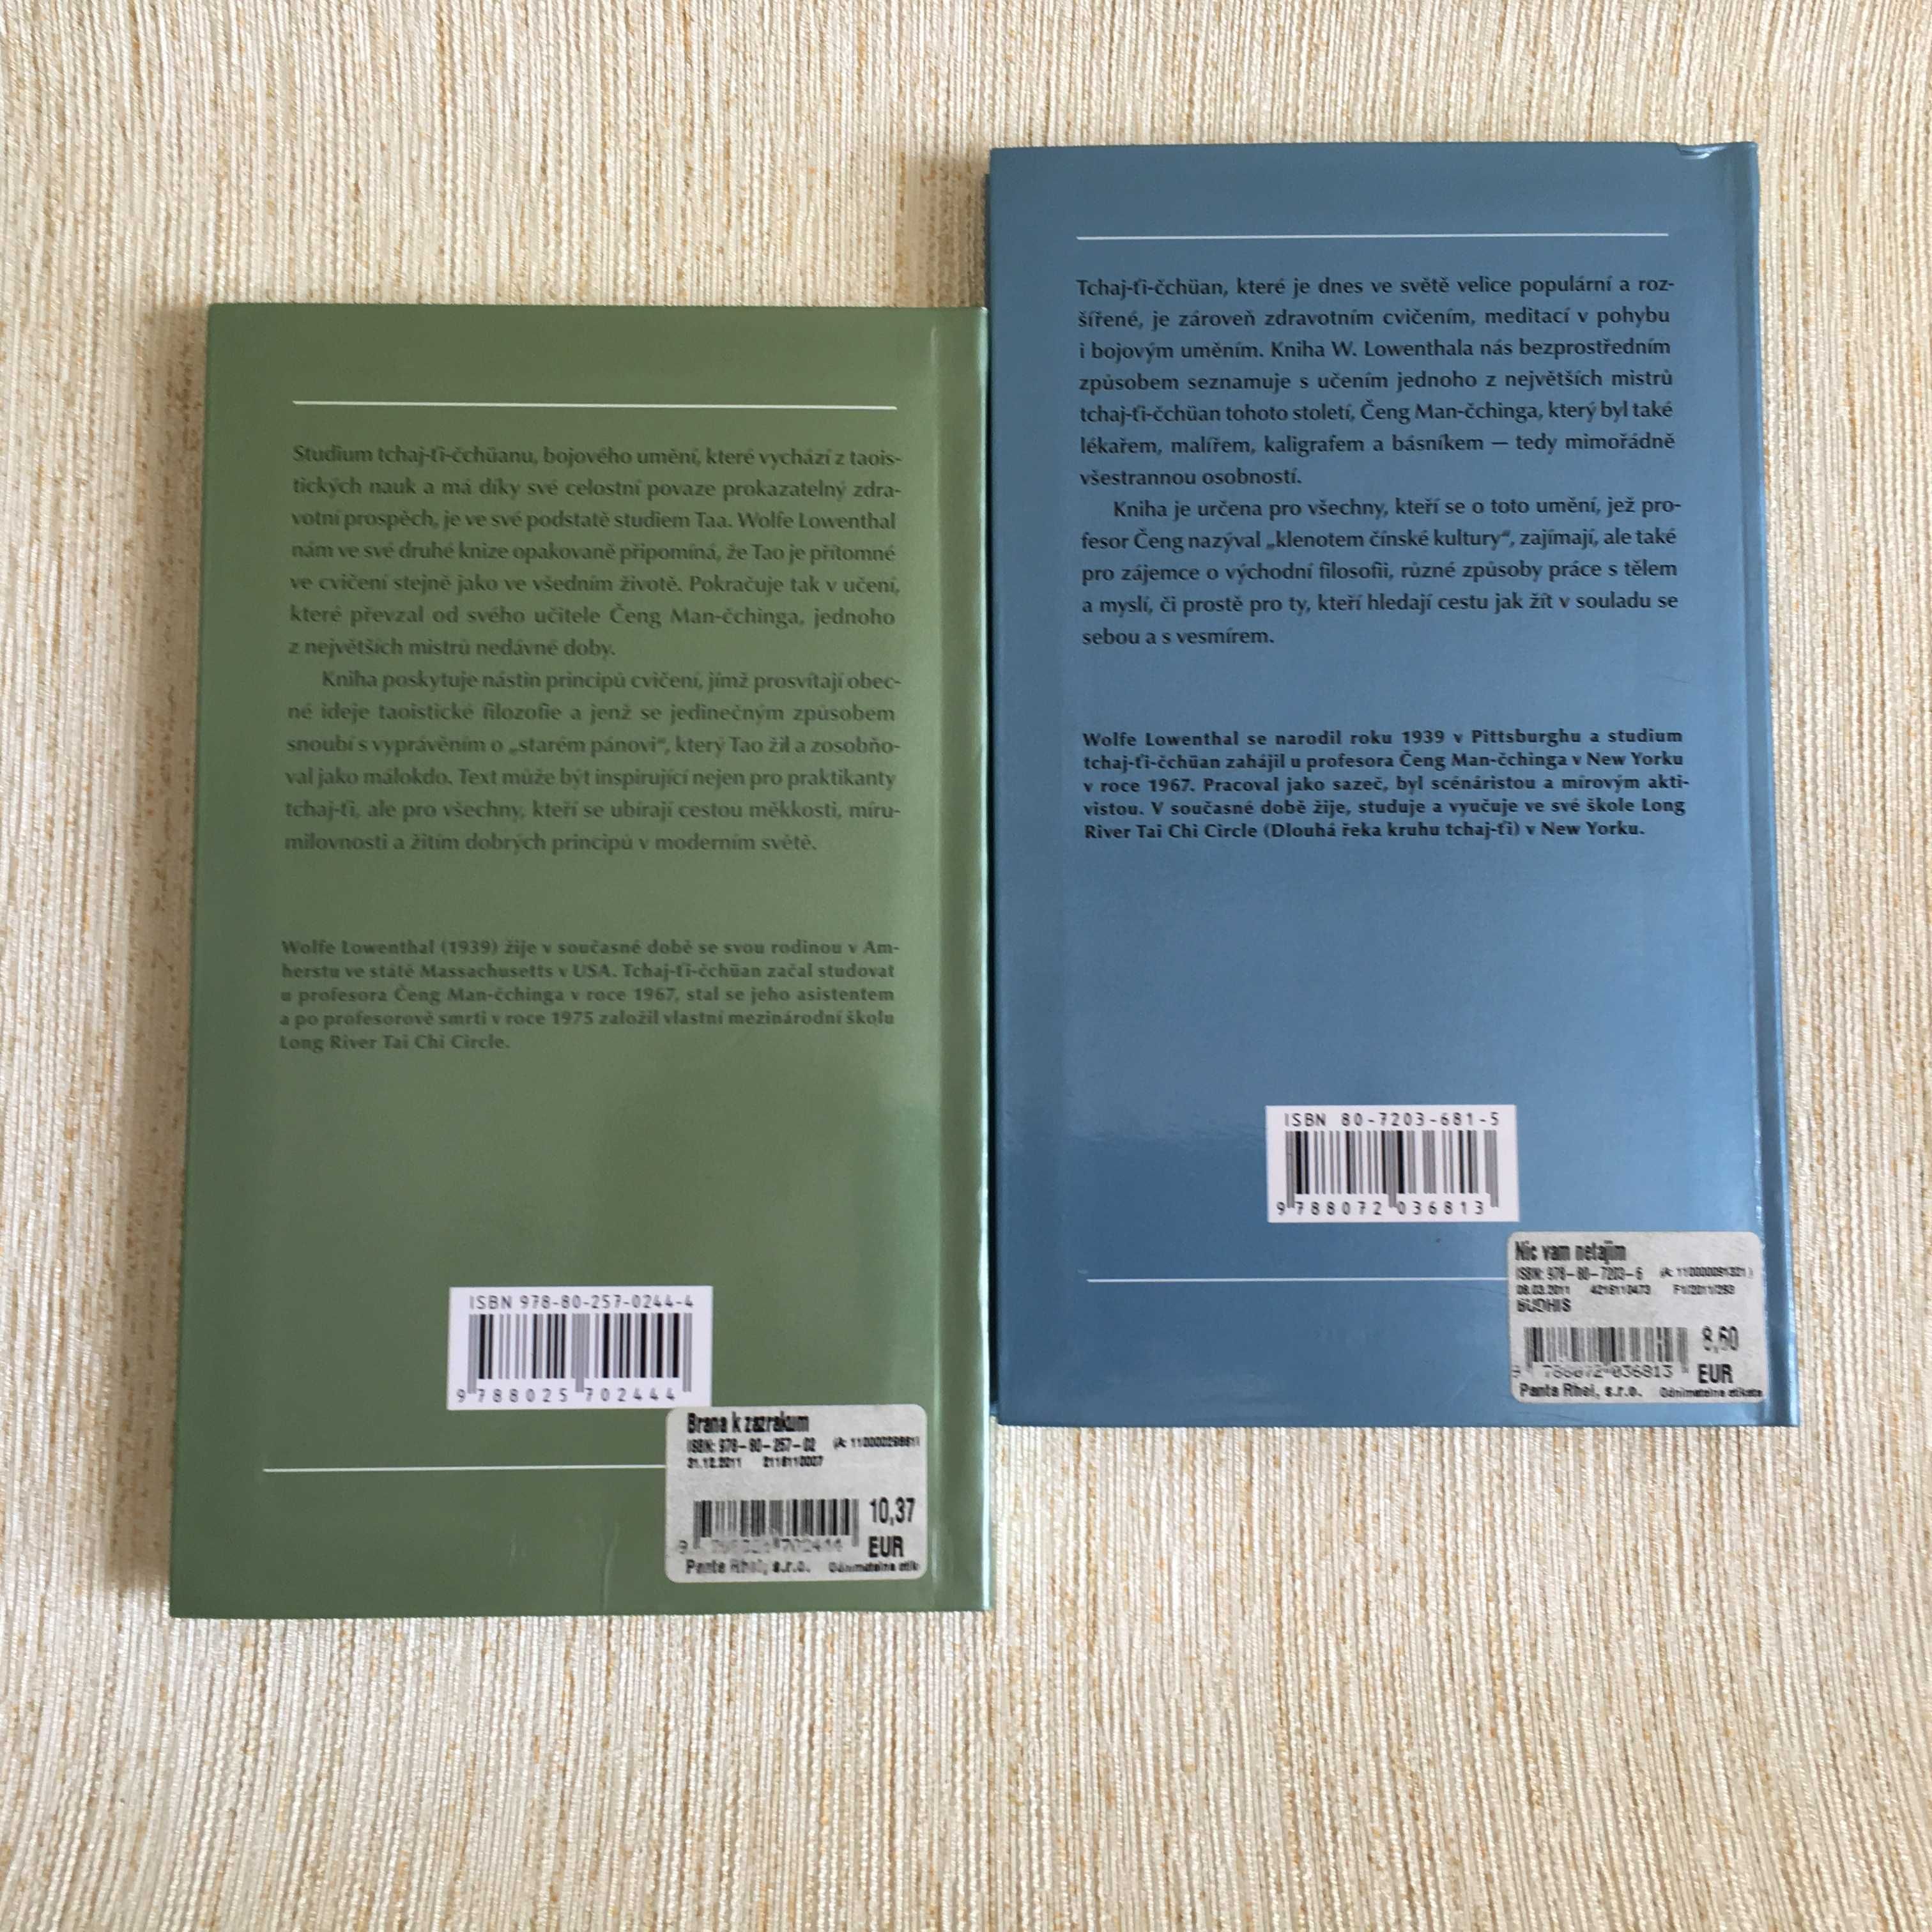 Вольфе Лілієнталь. Дві книги про Тайцзи о Ченг Ман-Чинге. Словацькою.